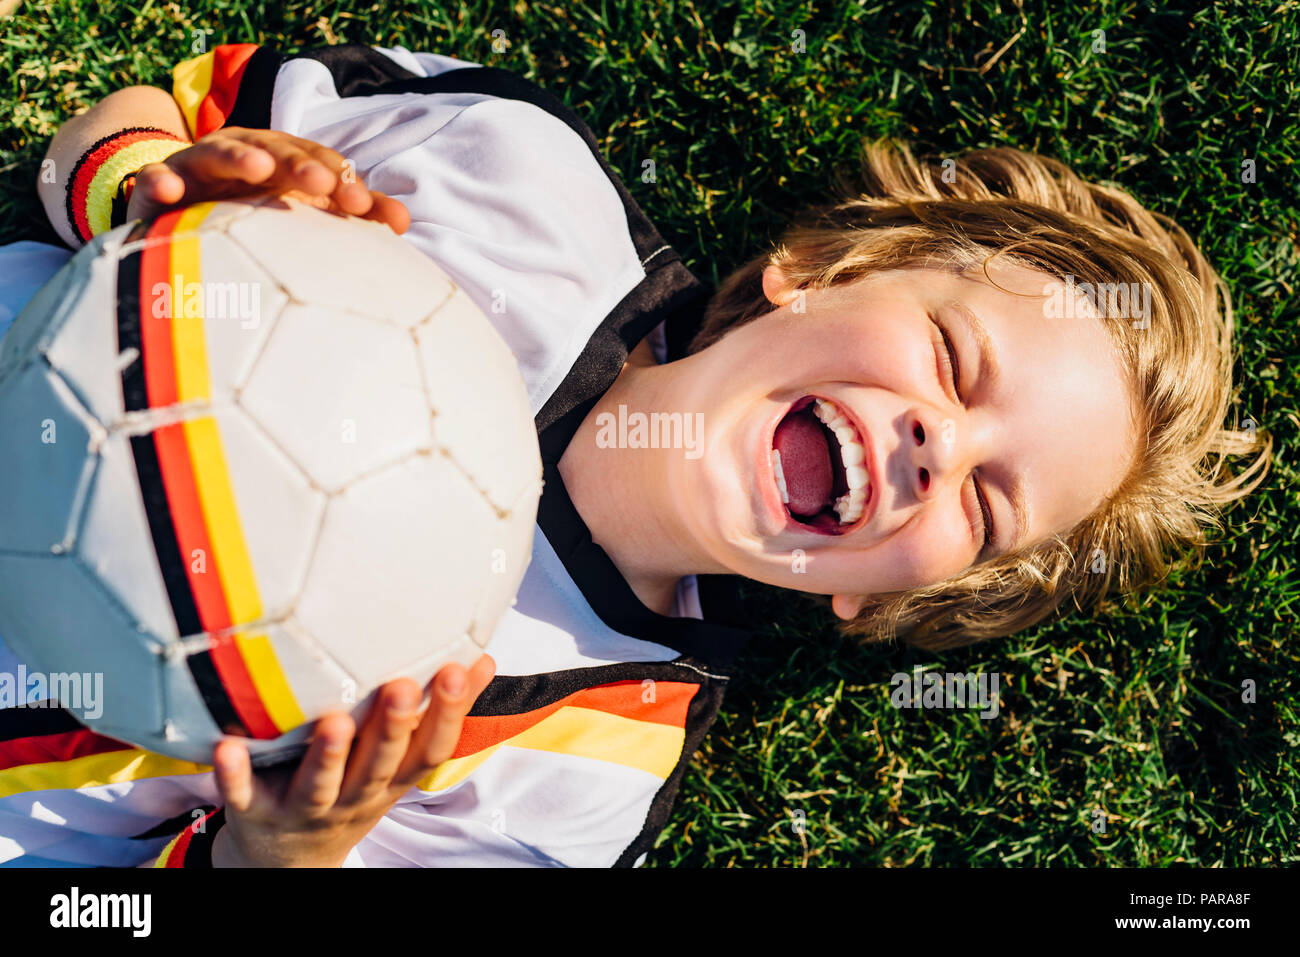 Garçon en allemand soccer shirt allongé sur l'herbe, riant joyeusement Banque D'Images